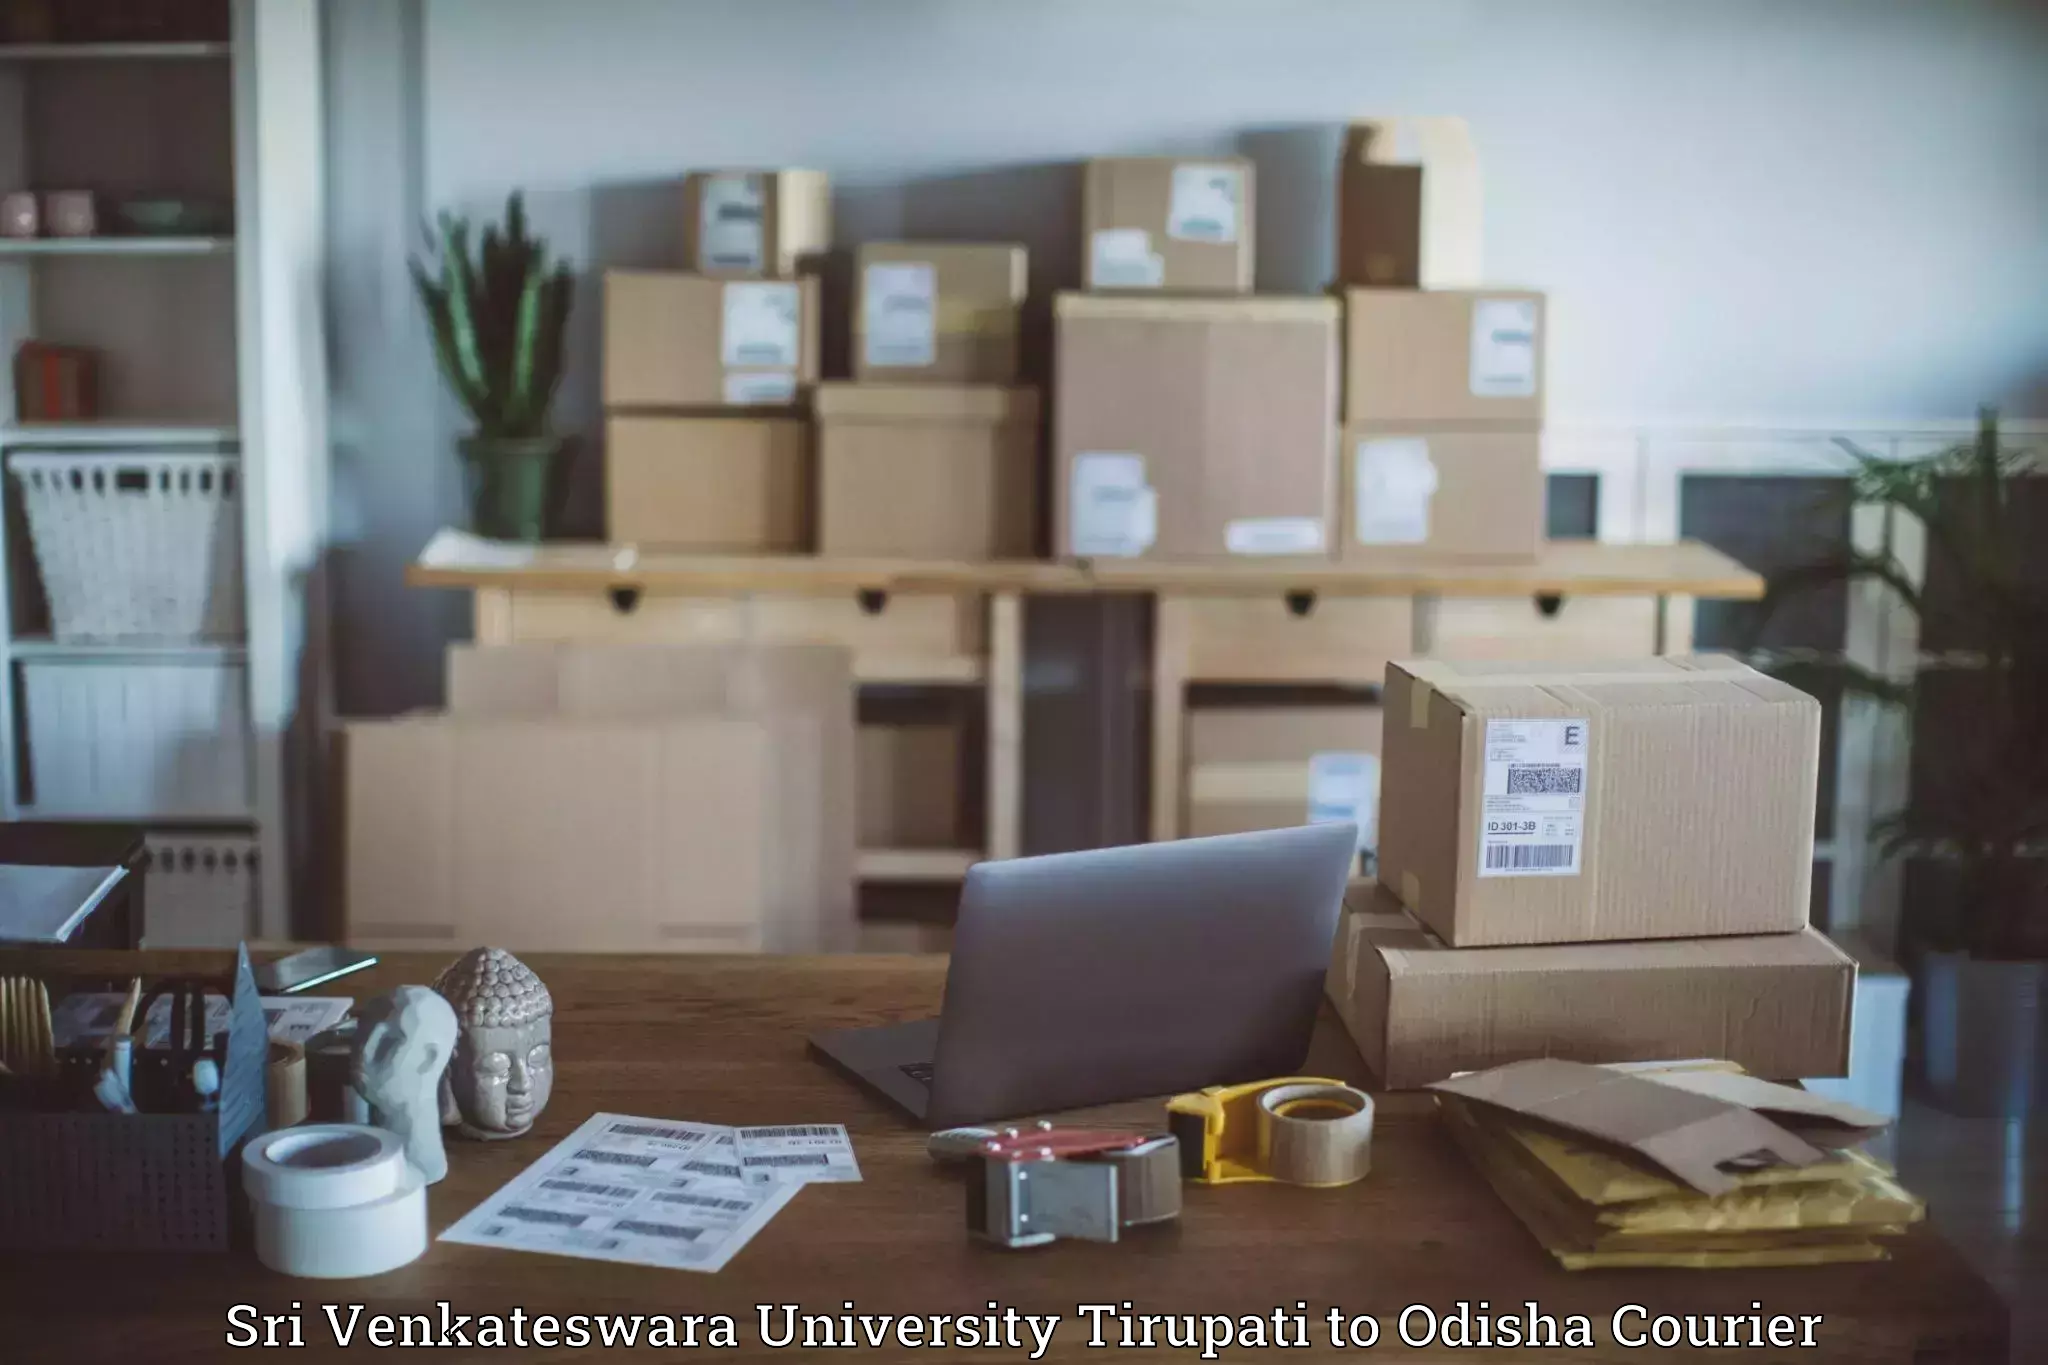 Residential courier service Sri Venkateswara University Tirupati to Raj Berhampur